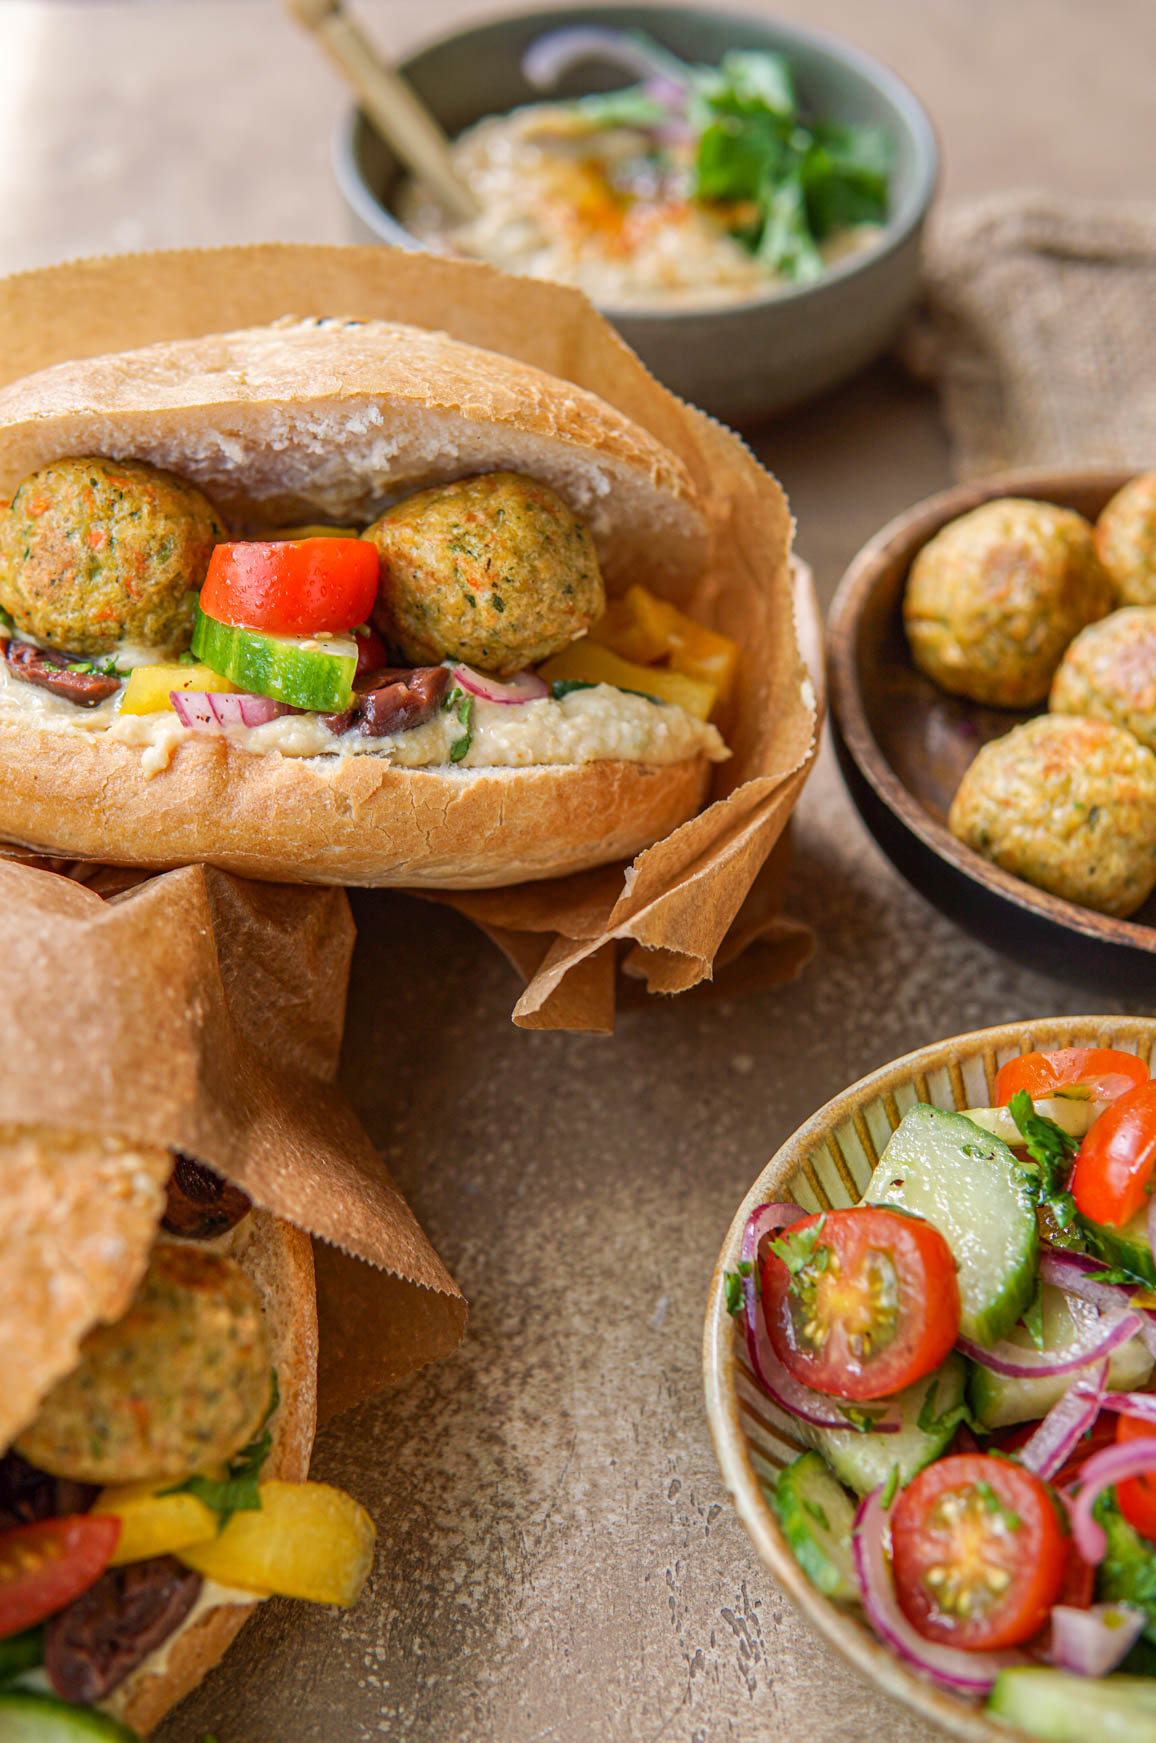 Recept voor Turks brood met falafel vegan.